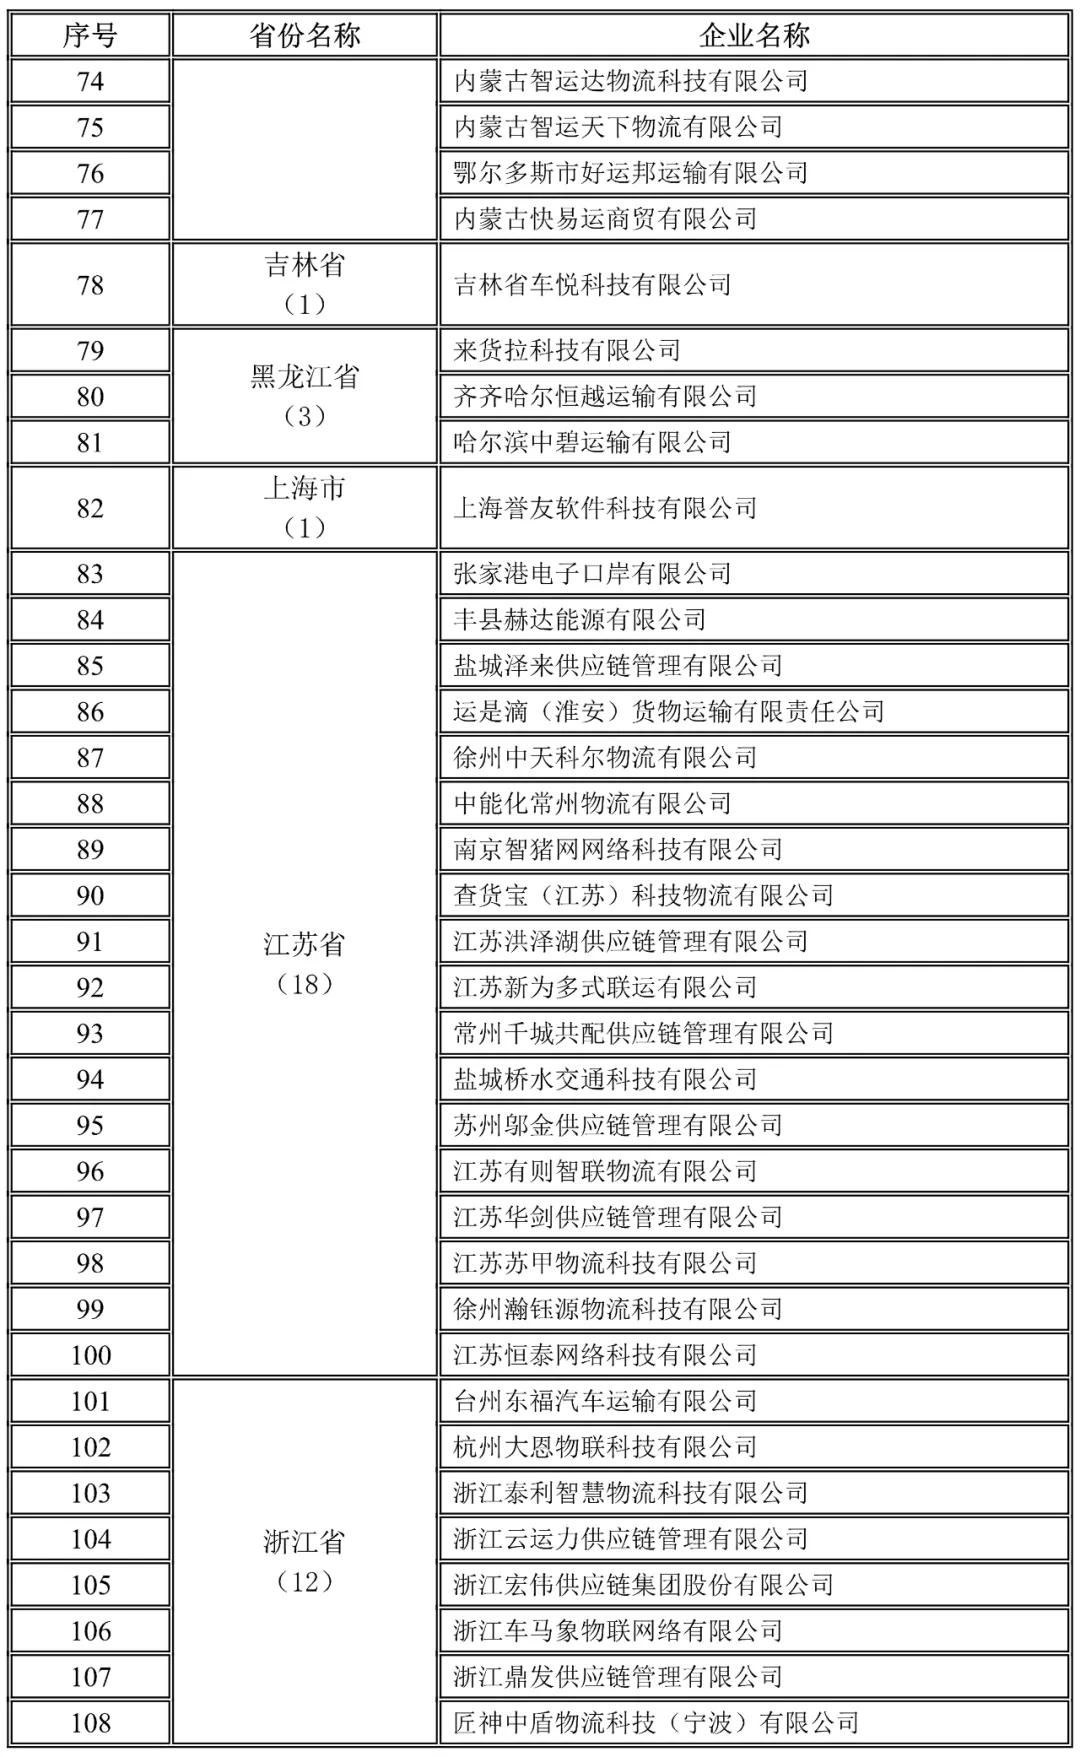 内蒙古自治区,吉林,黑龙江,上海,江苏,浙江地方网络货运企业未上传运单企业名录